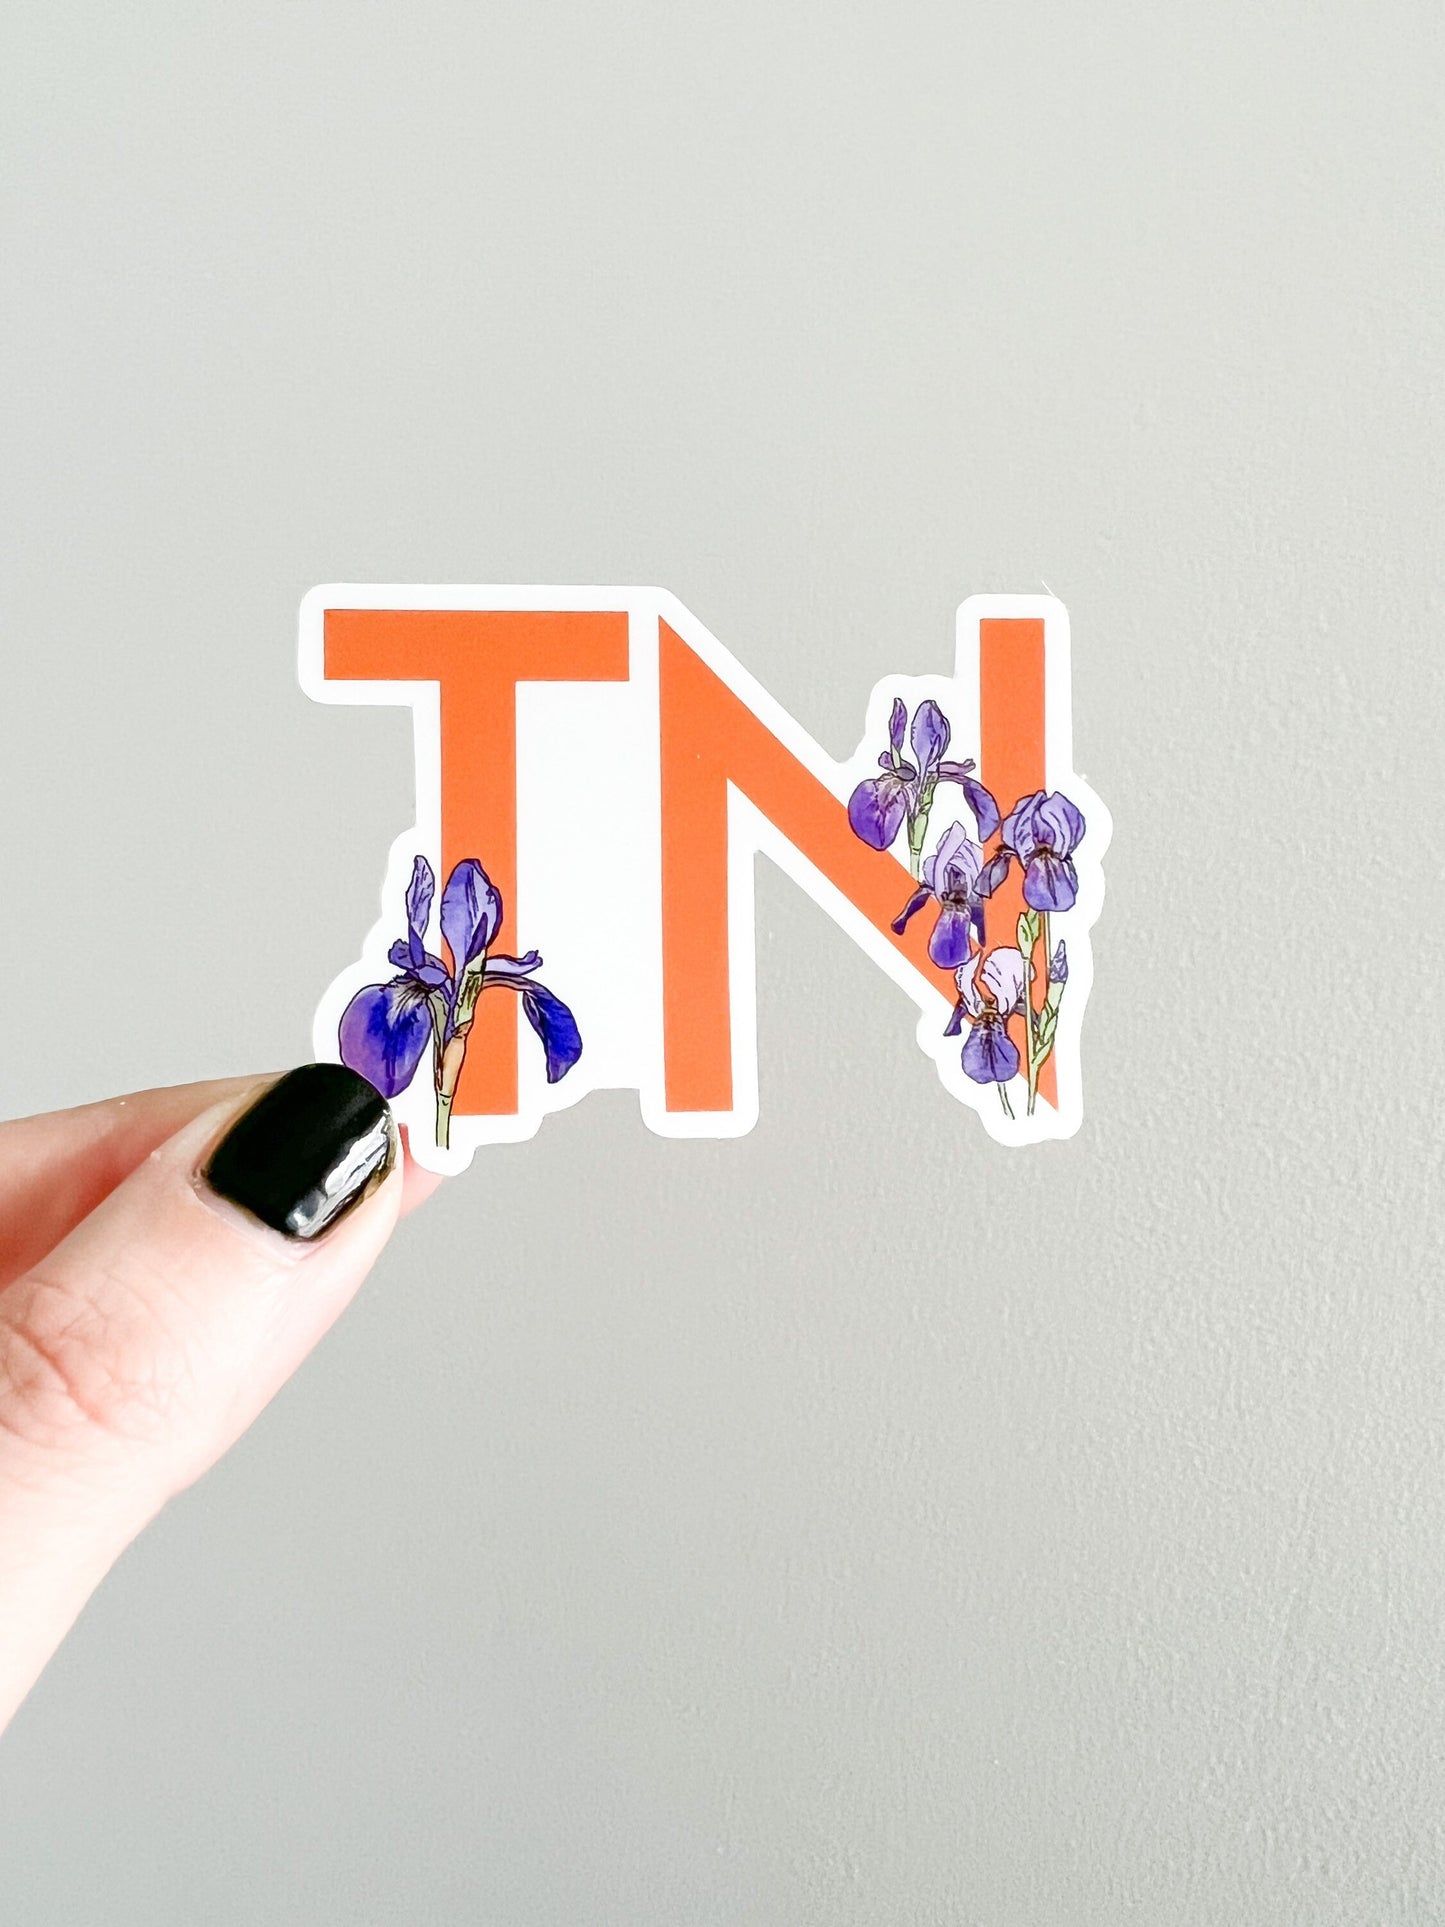 TN - Tennessee state flower sticker - Iris